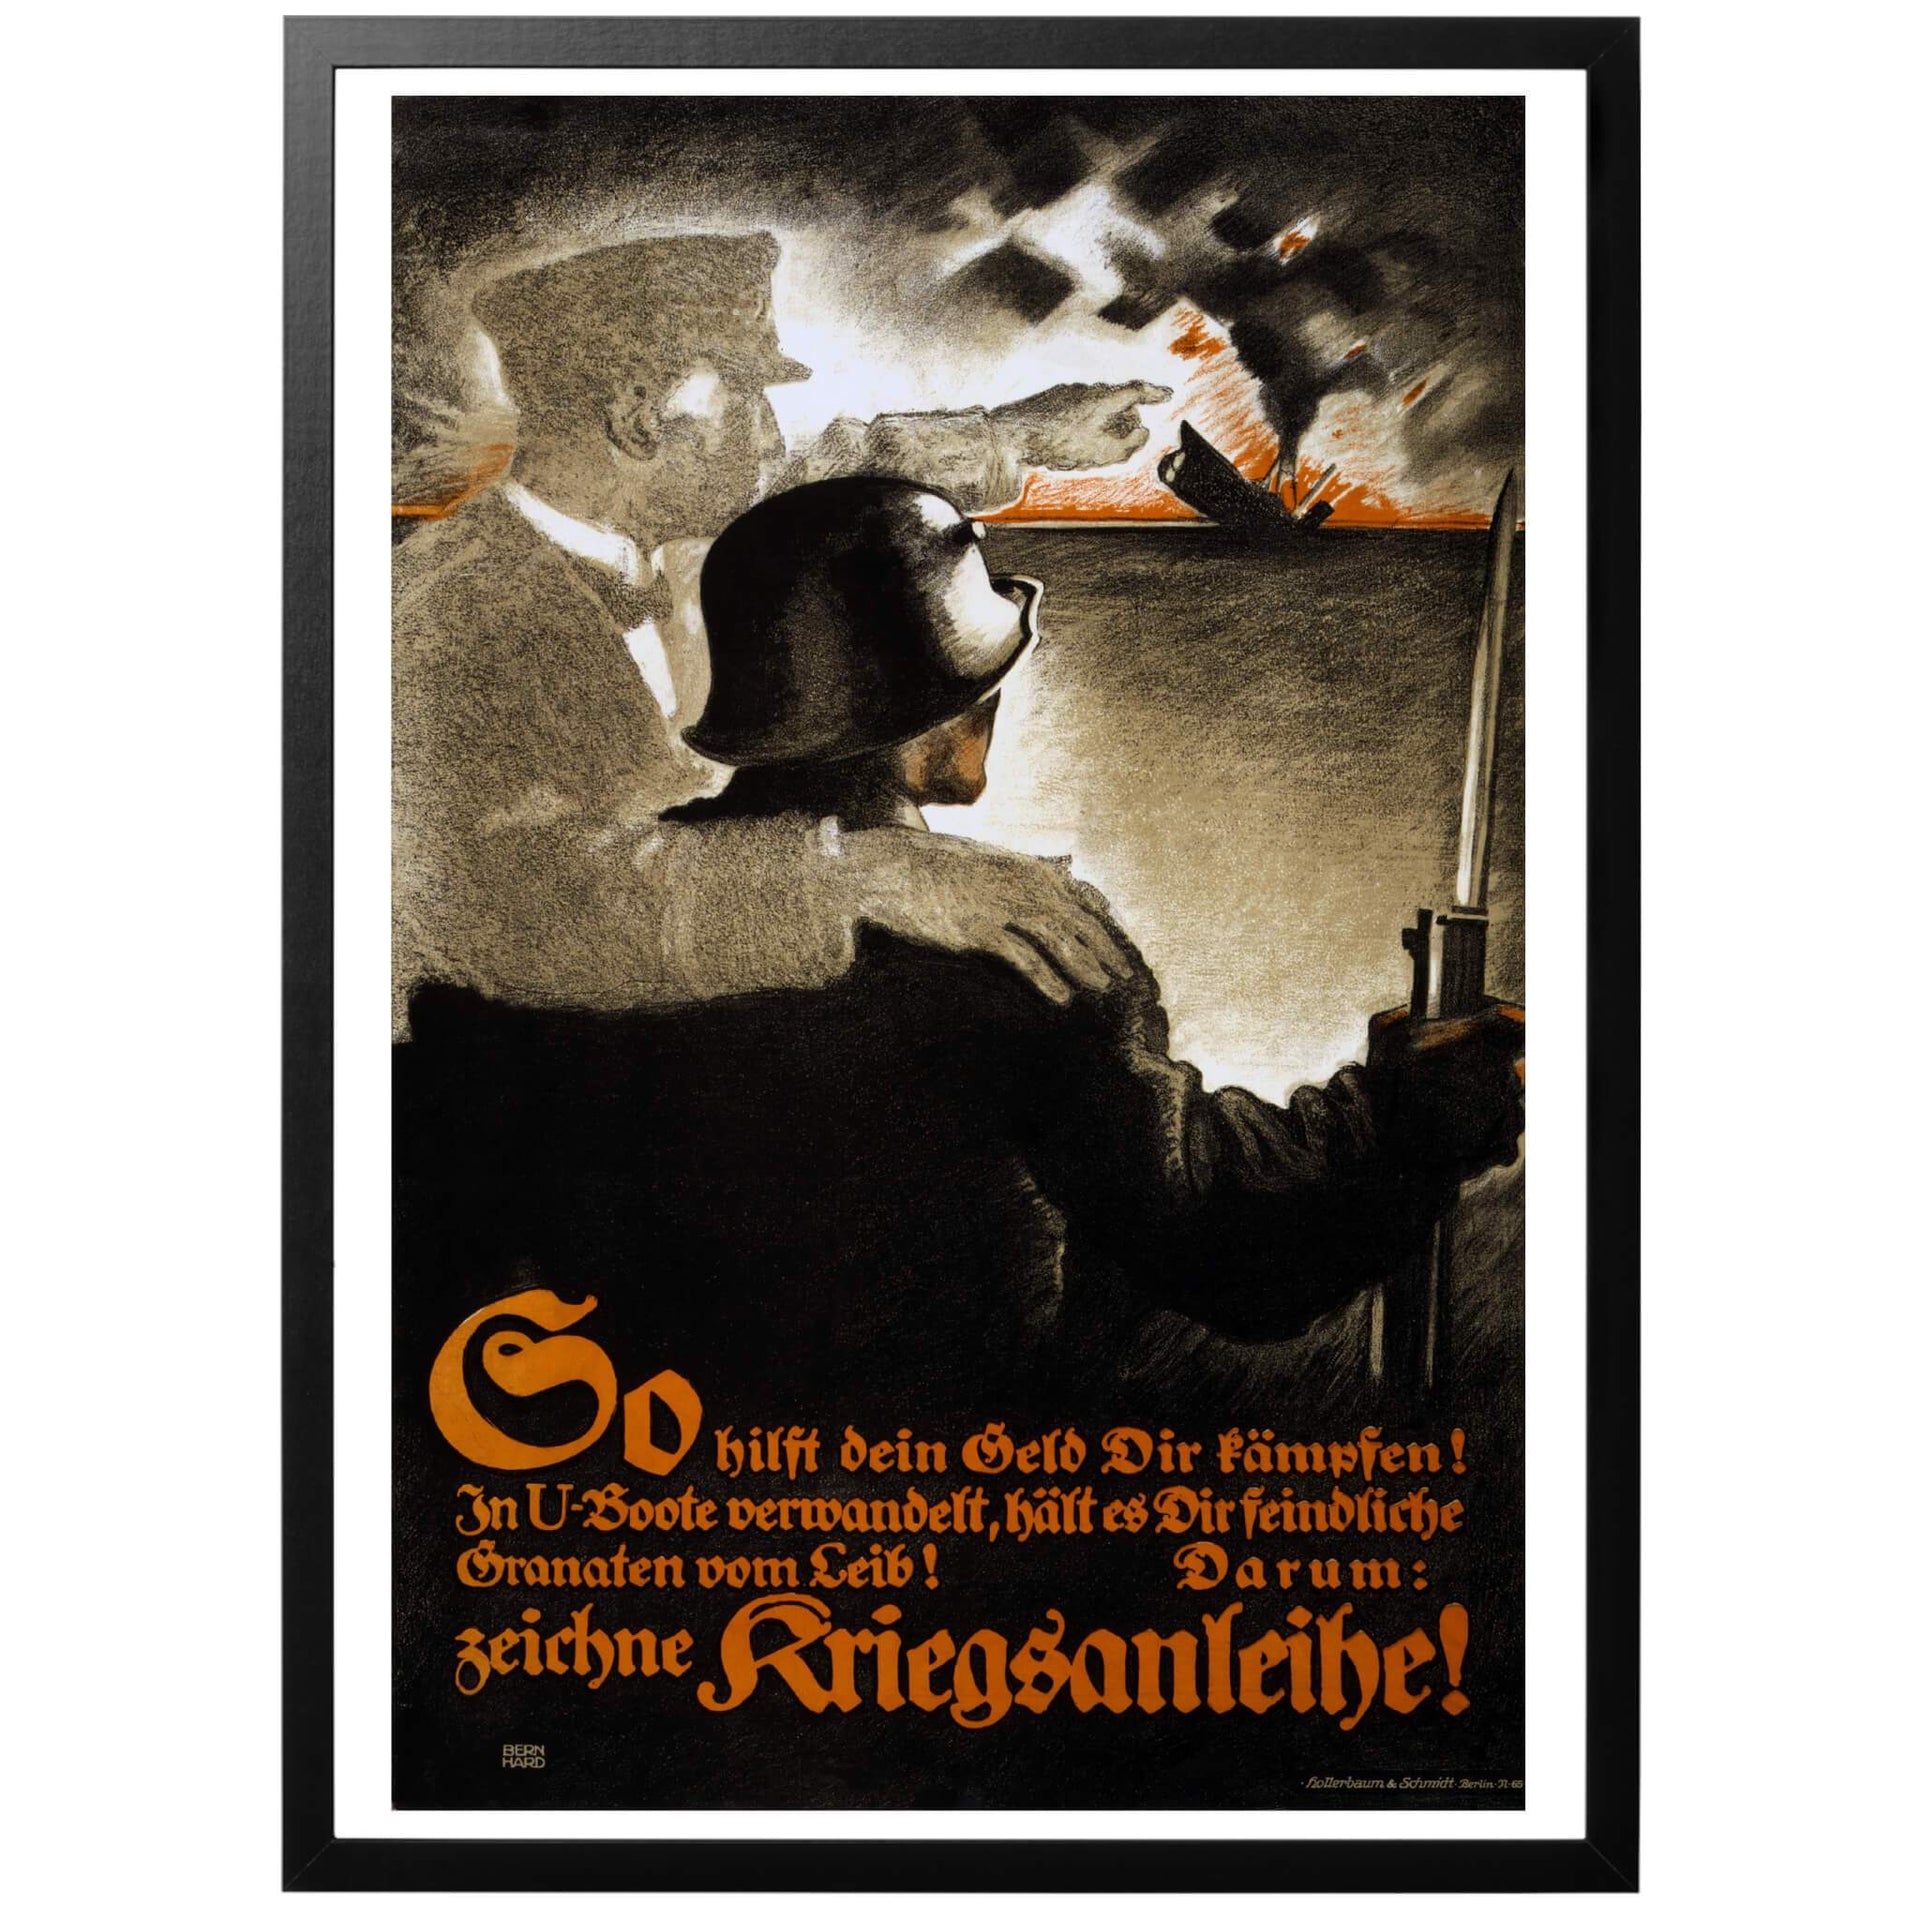 En tysk affisch för att uppmuntra till köp av krigsobligationer. På bilden ser man en Ssöman som håller om en soldat som tittar på ett allierat skepp som sjunker pga. att det blivit torpederat av en tysk U-båt.